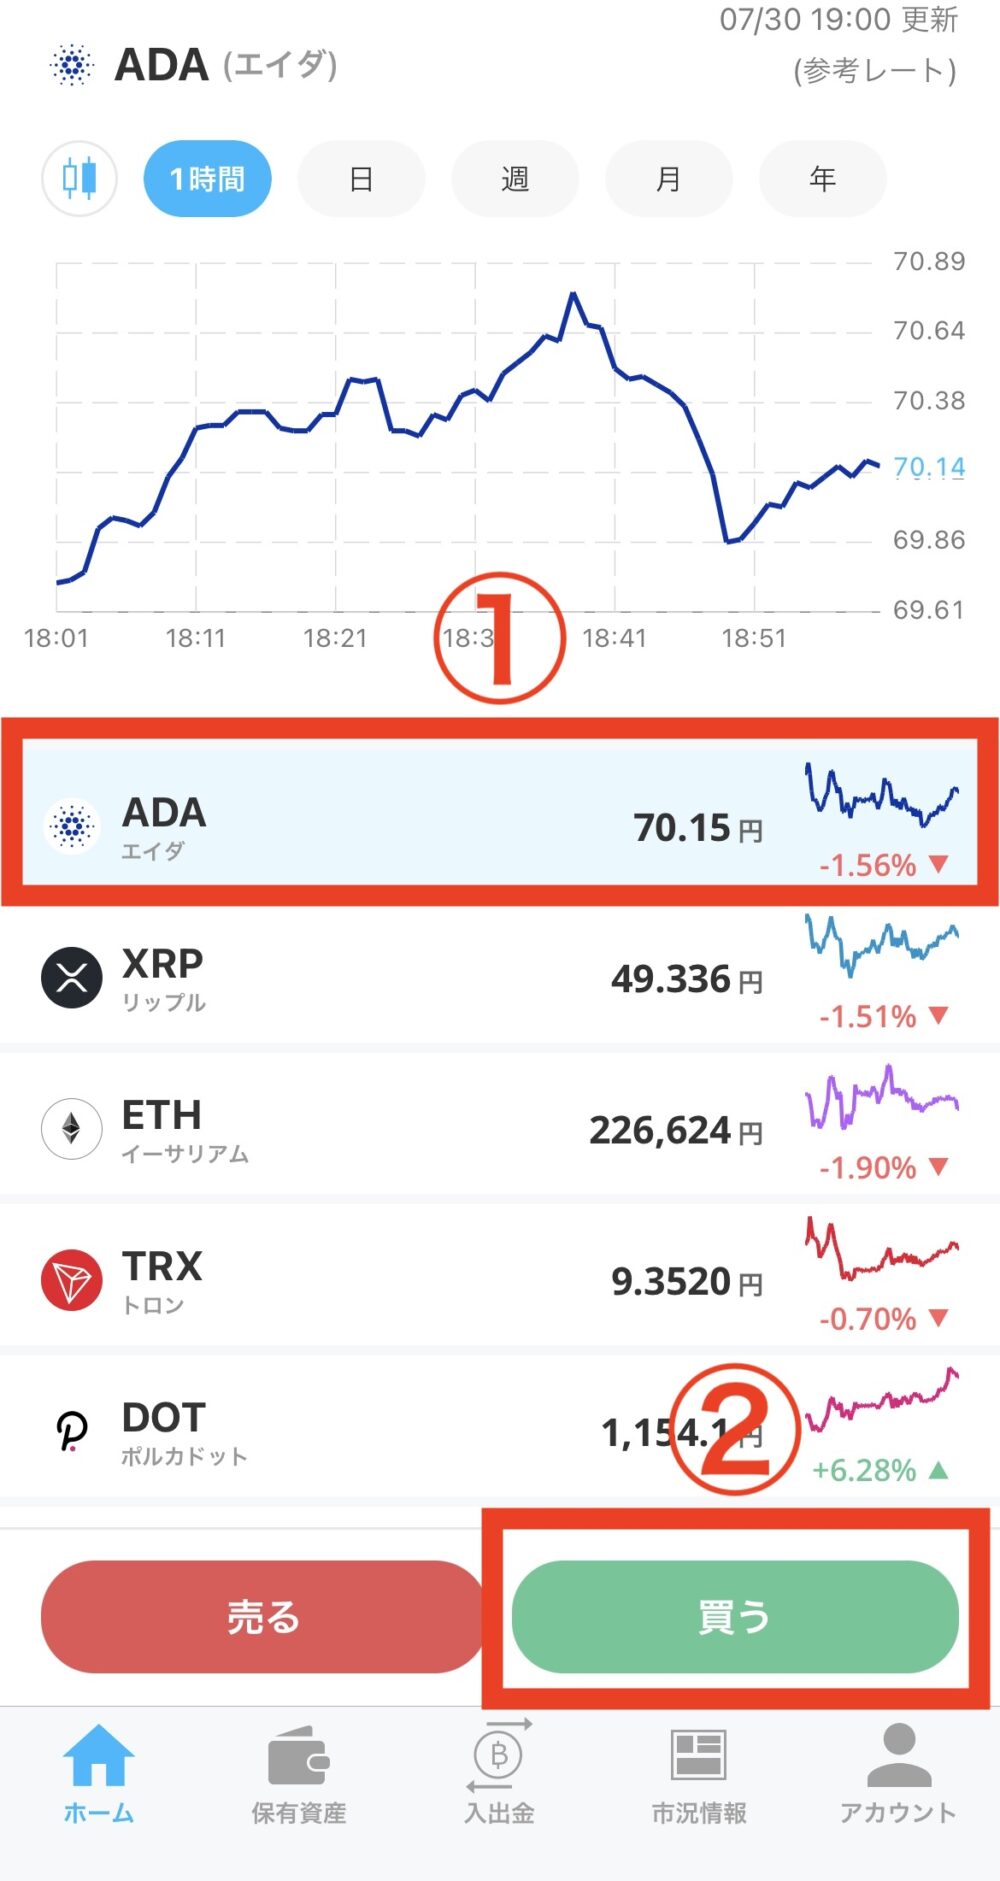 ADAコインをアプリで購入する方法【販売所】